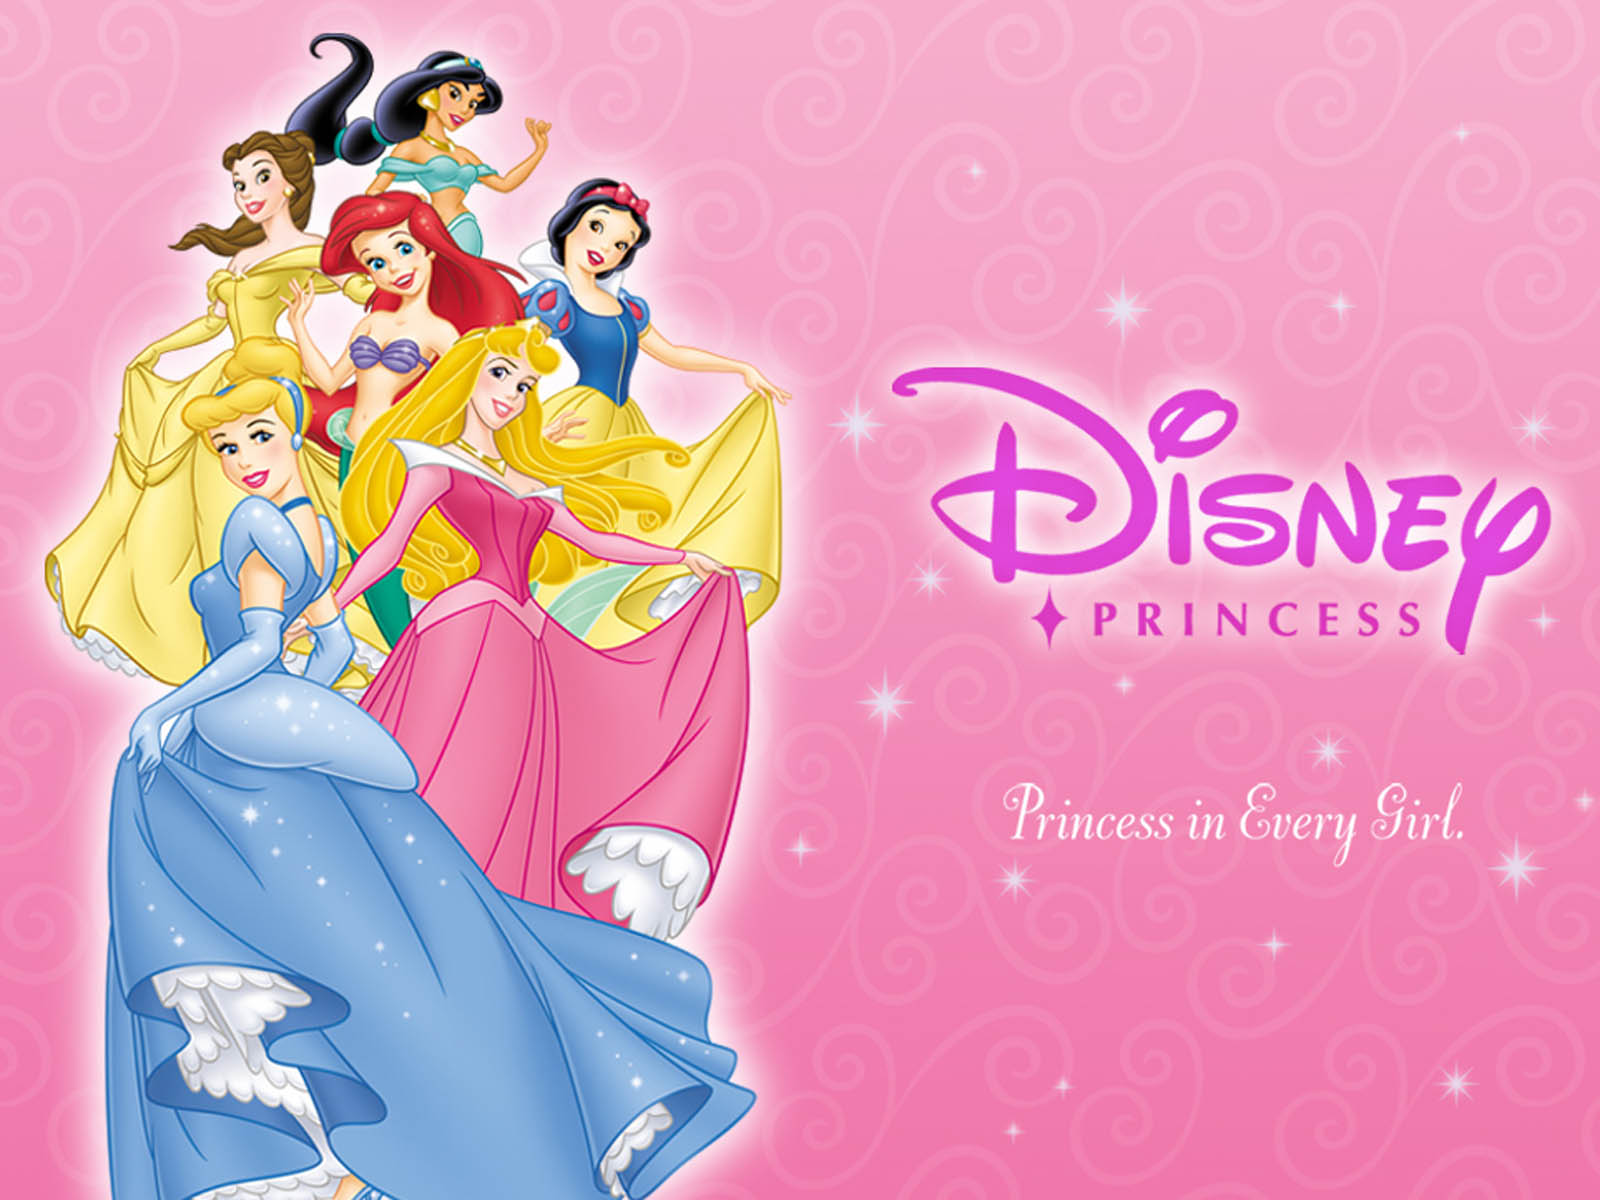 4dac5ef82d Disney Princess Wallpapers 05 Disney Princess Wallpapers